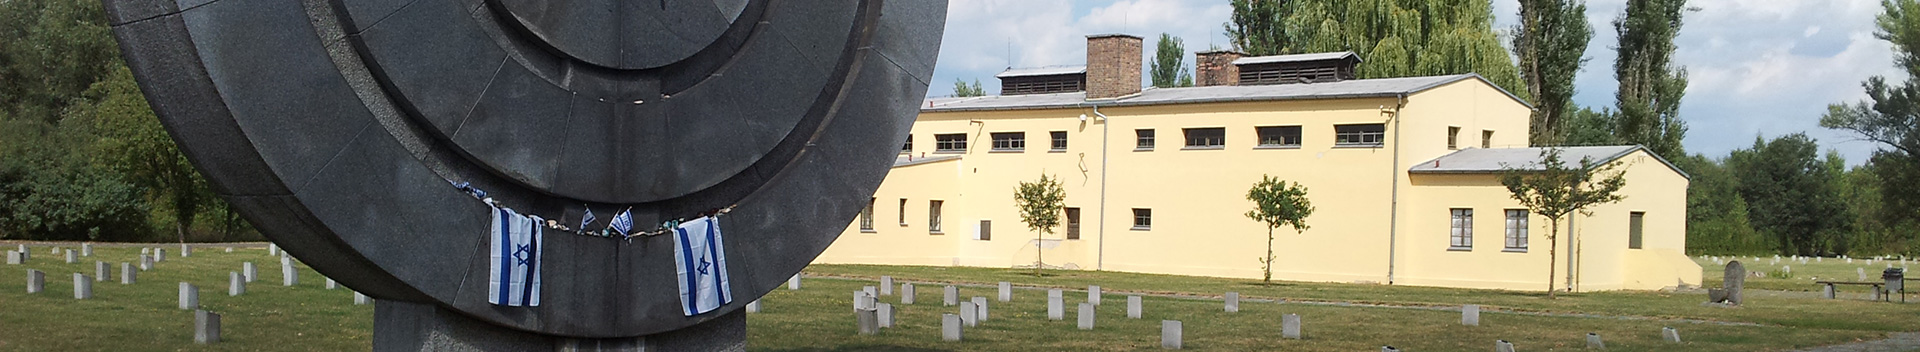 Terezin Prague Tours – Terezin Concentration Camp Private Tours